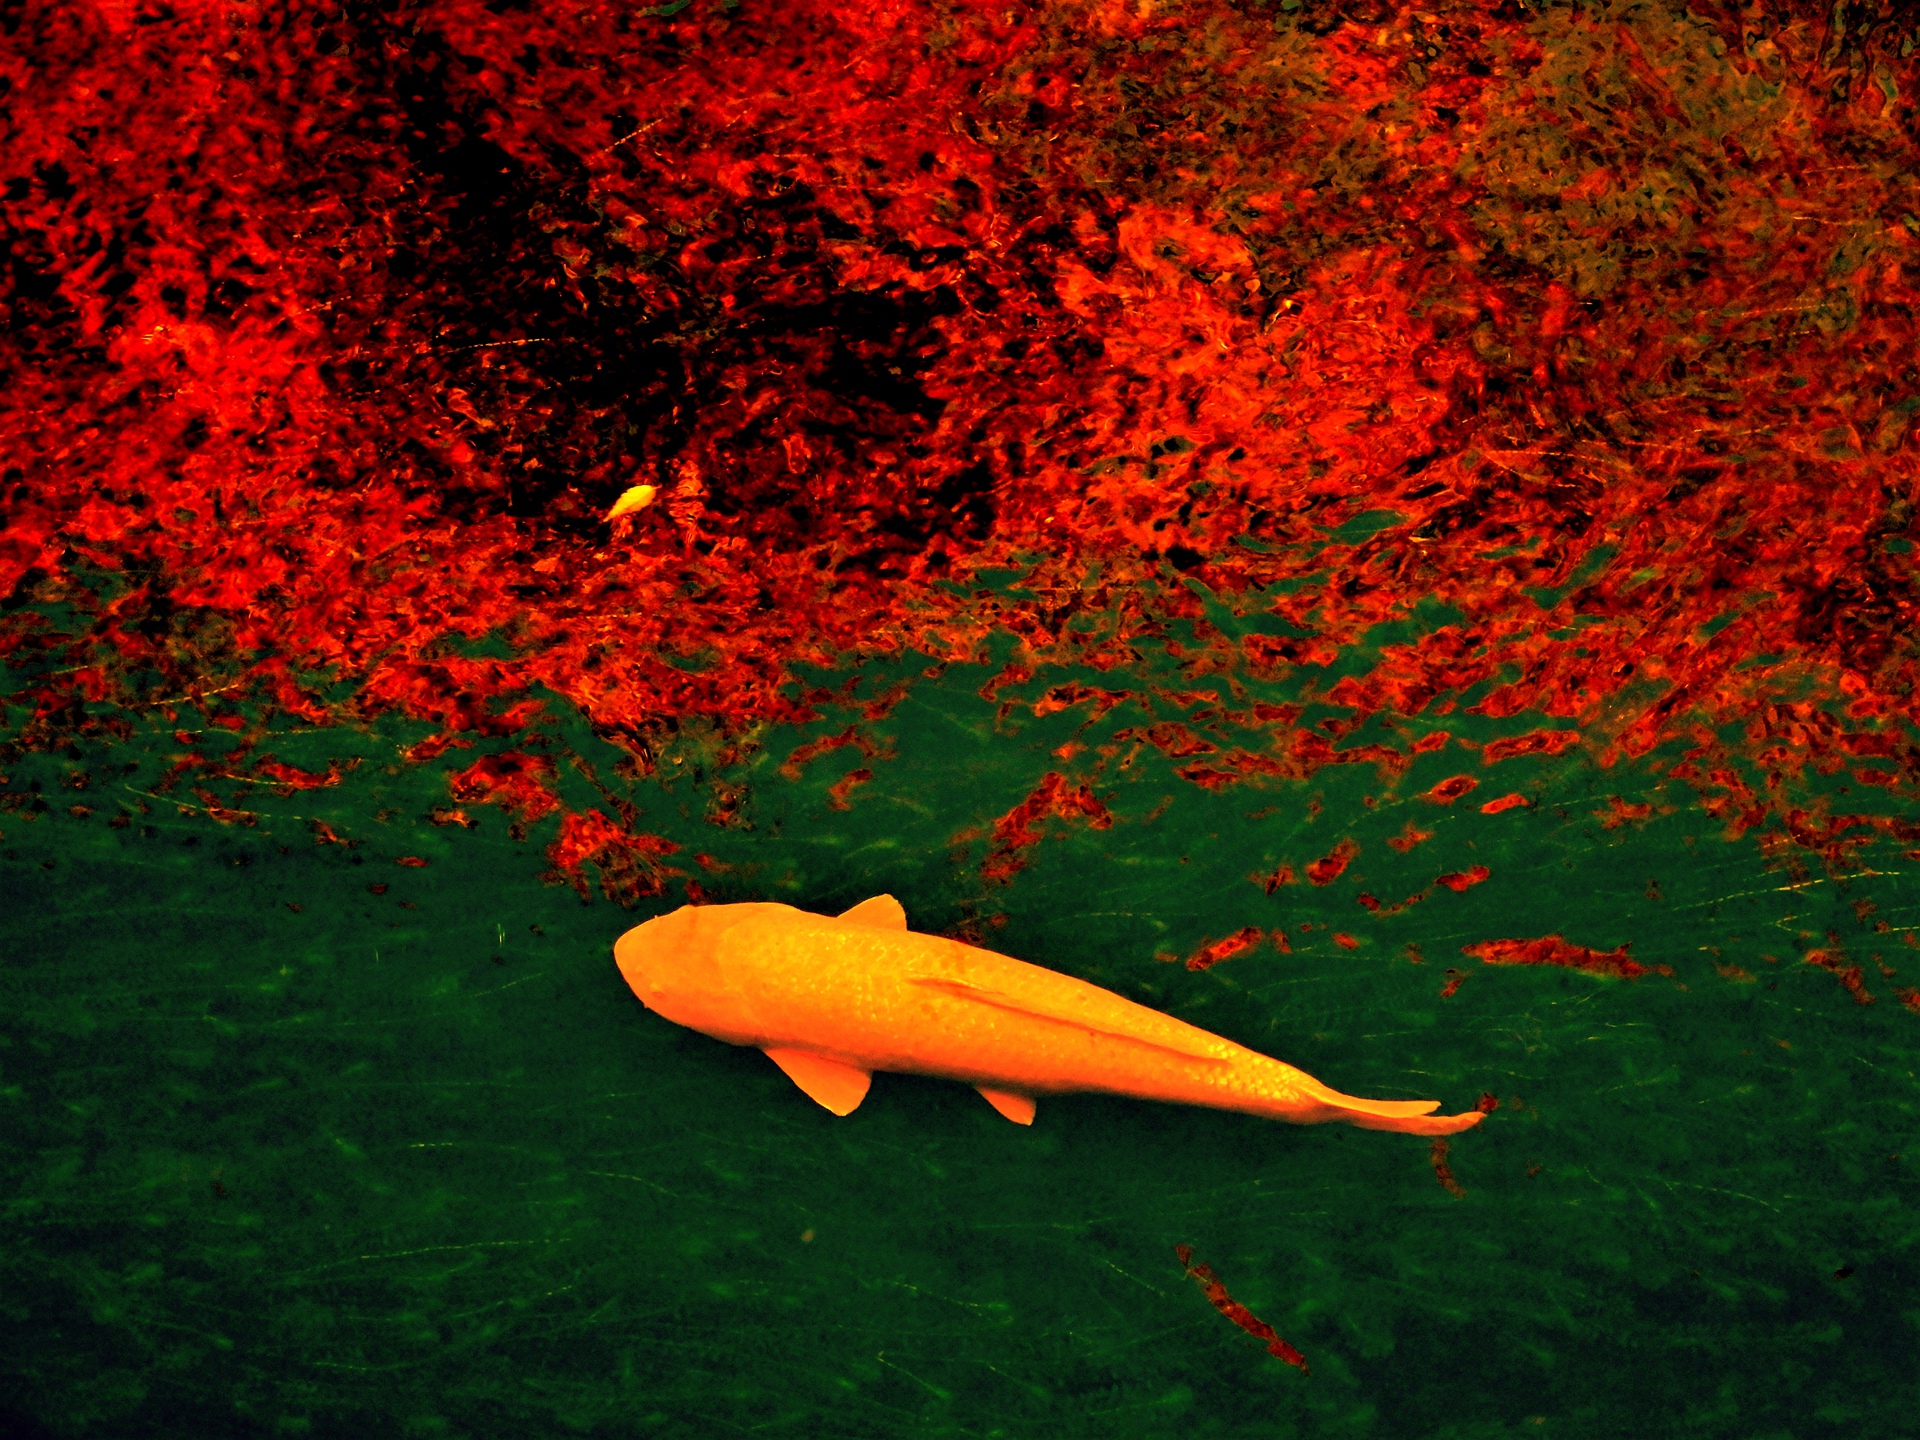 魚 水生生物 紅葉を映す川を泳ぐ鯉 壁紙19x1440 壁紙館